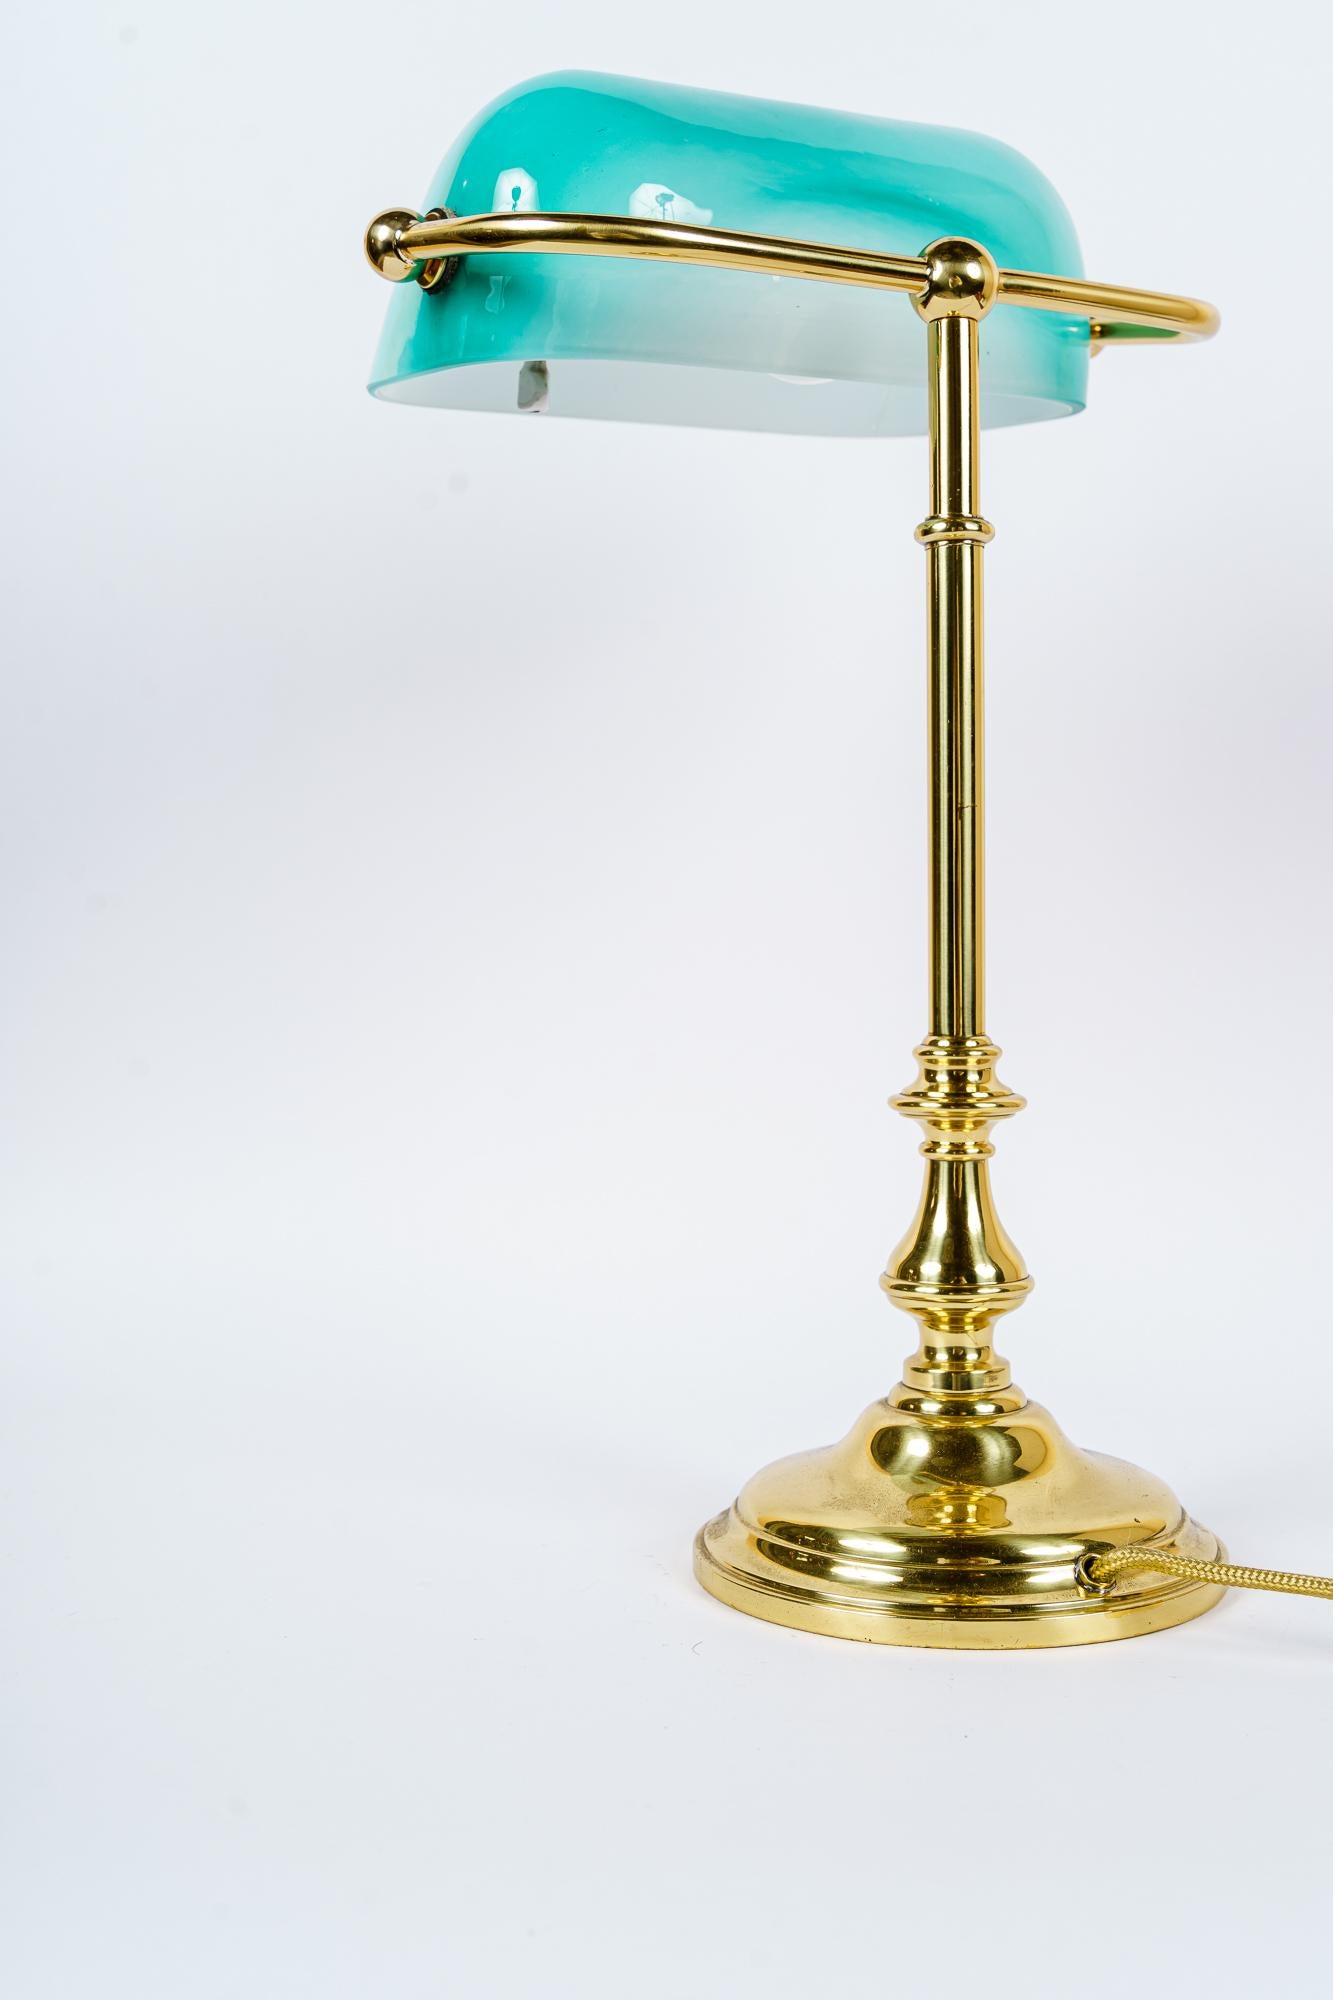 Lampe de table Art Déco ( lampe de banquier ) vienne vers 1920
Laiton poli et émaillé au four
rare abat-jour original en verre vert clair.